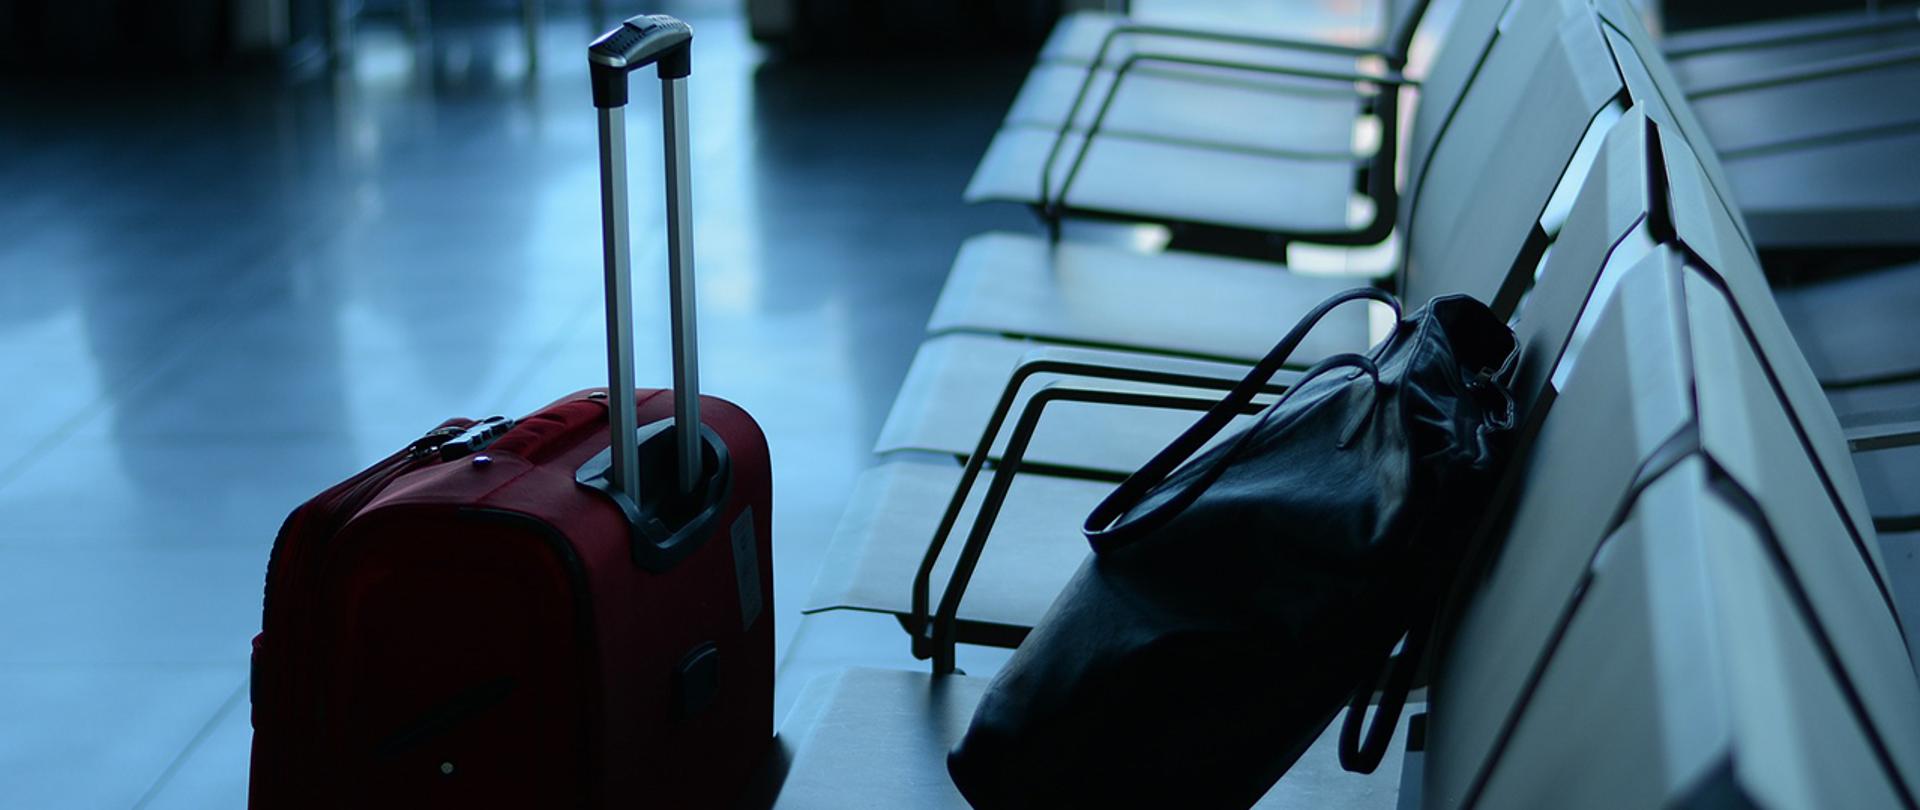 Na zdjęciu: torba podróżna oraz torebka w poczekalni